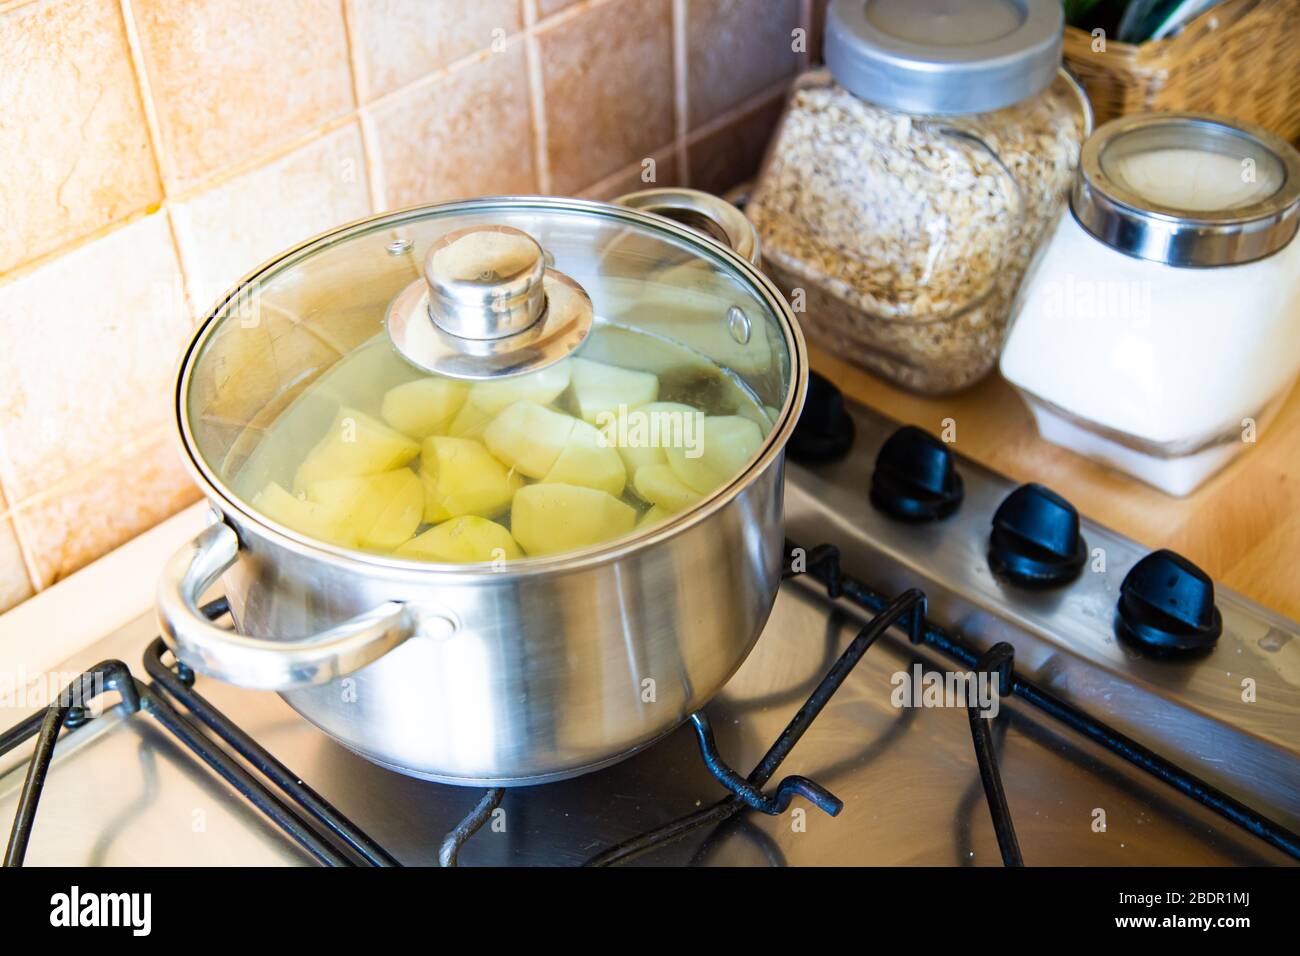 Patate bollenti nel recipiente in cucina Foto Stock